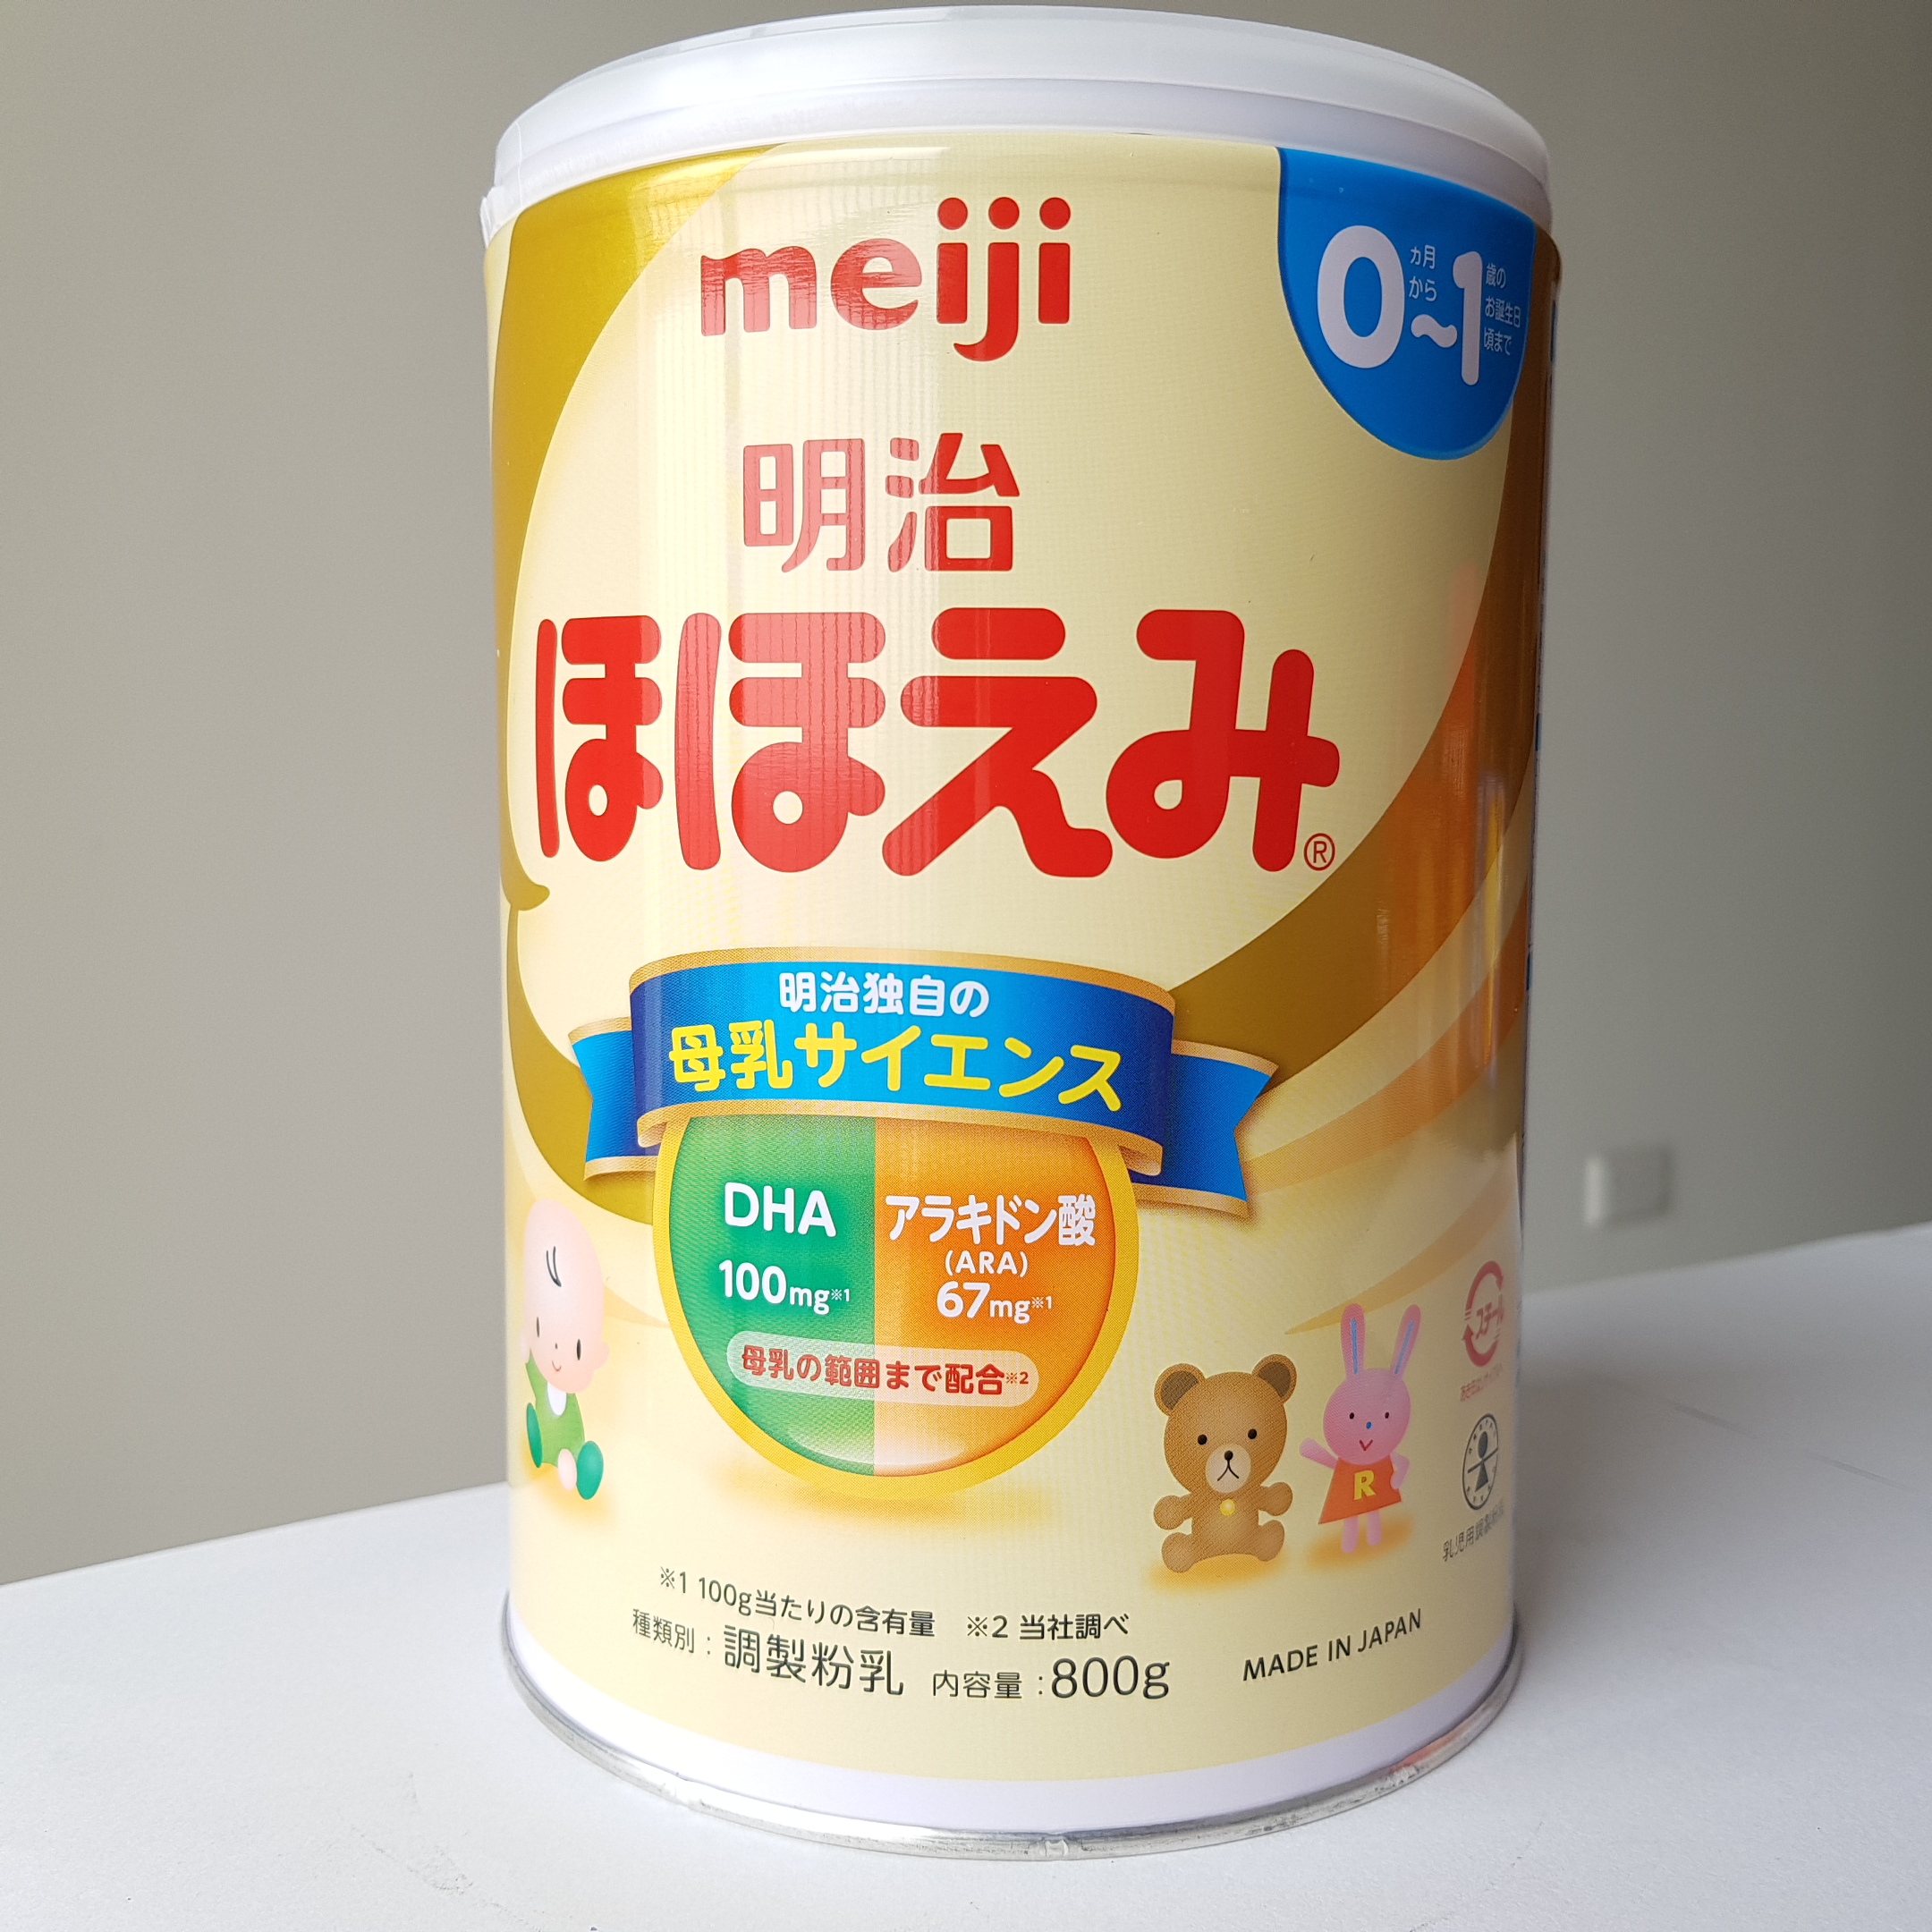 Sữa Bột Dinh Dưỡng Meiji Số 0 dành Cho Bé Từ 0-1 Tuổi (Dạng lon)